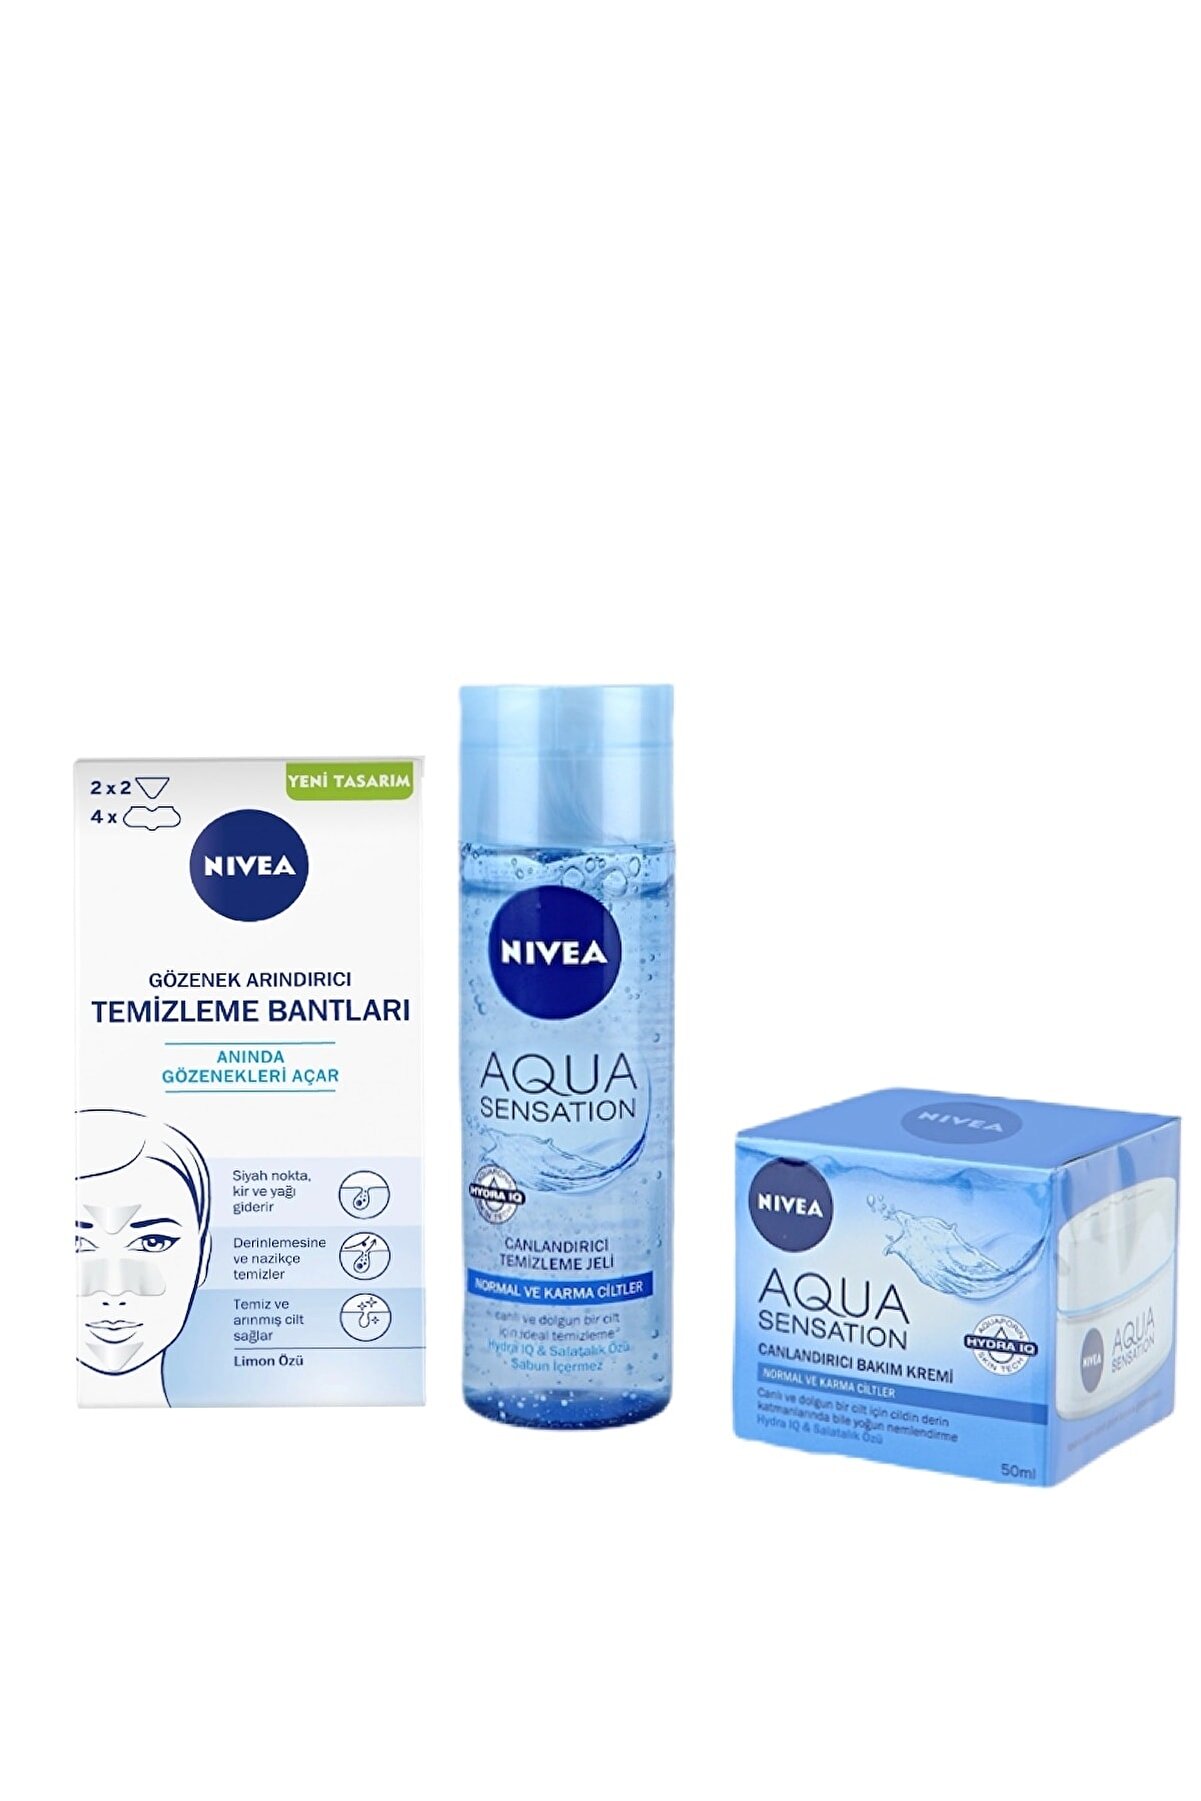 NIVEA Siyah Nokta Gözenek Arındırıcı + Aqua Sensation Yüz Temizleme Jeli 200 ml + Bakım Kremi 50 ml